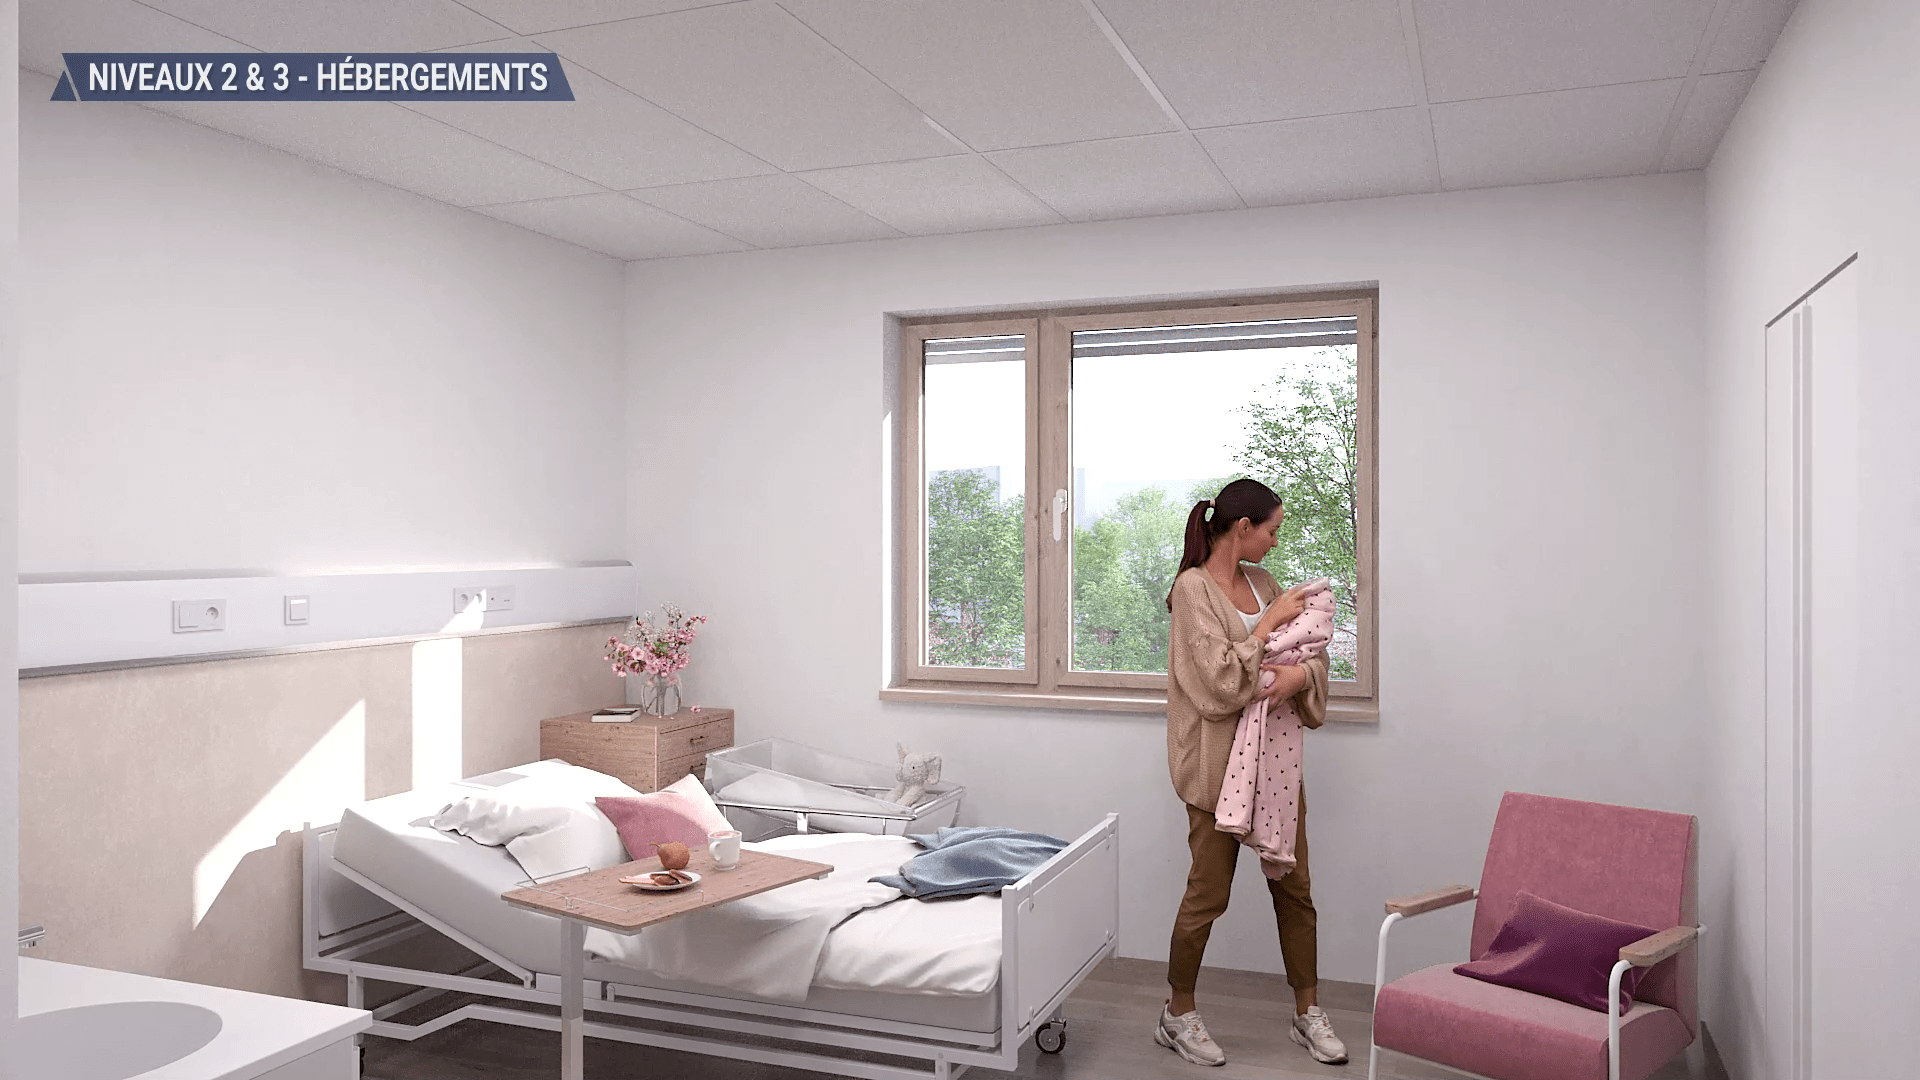 Capture du film séduction vue d'une chambre pour le projet du Nouvel Hôpital d'Argenteuil